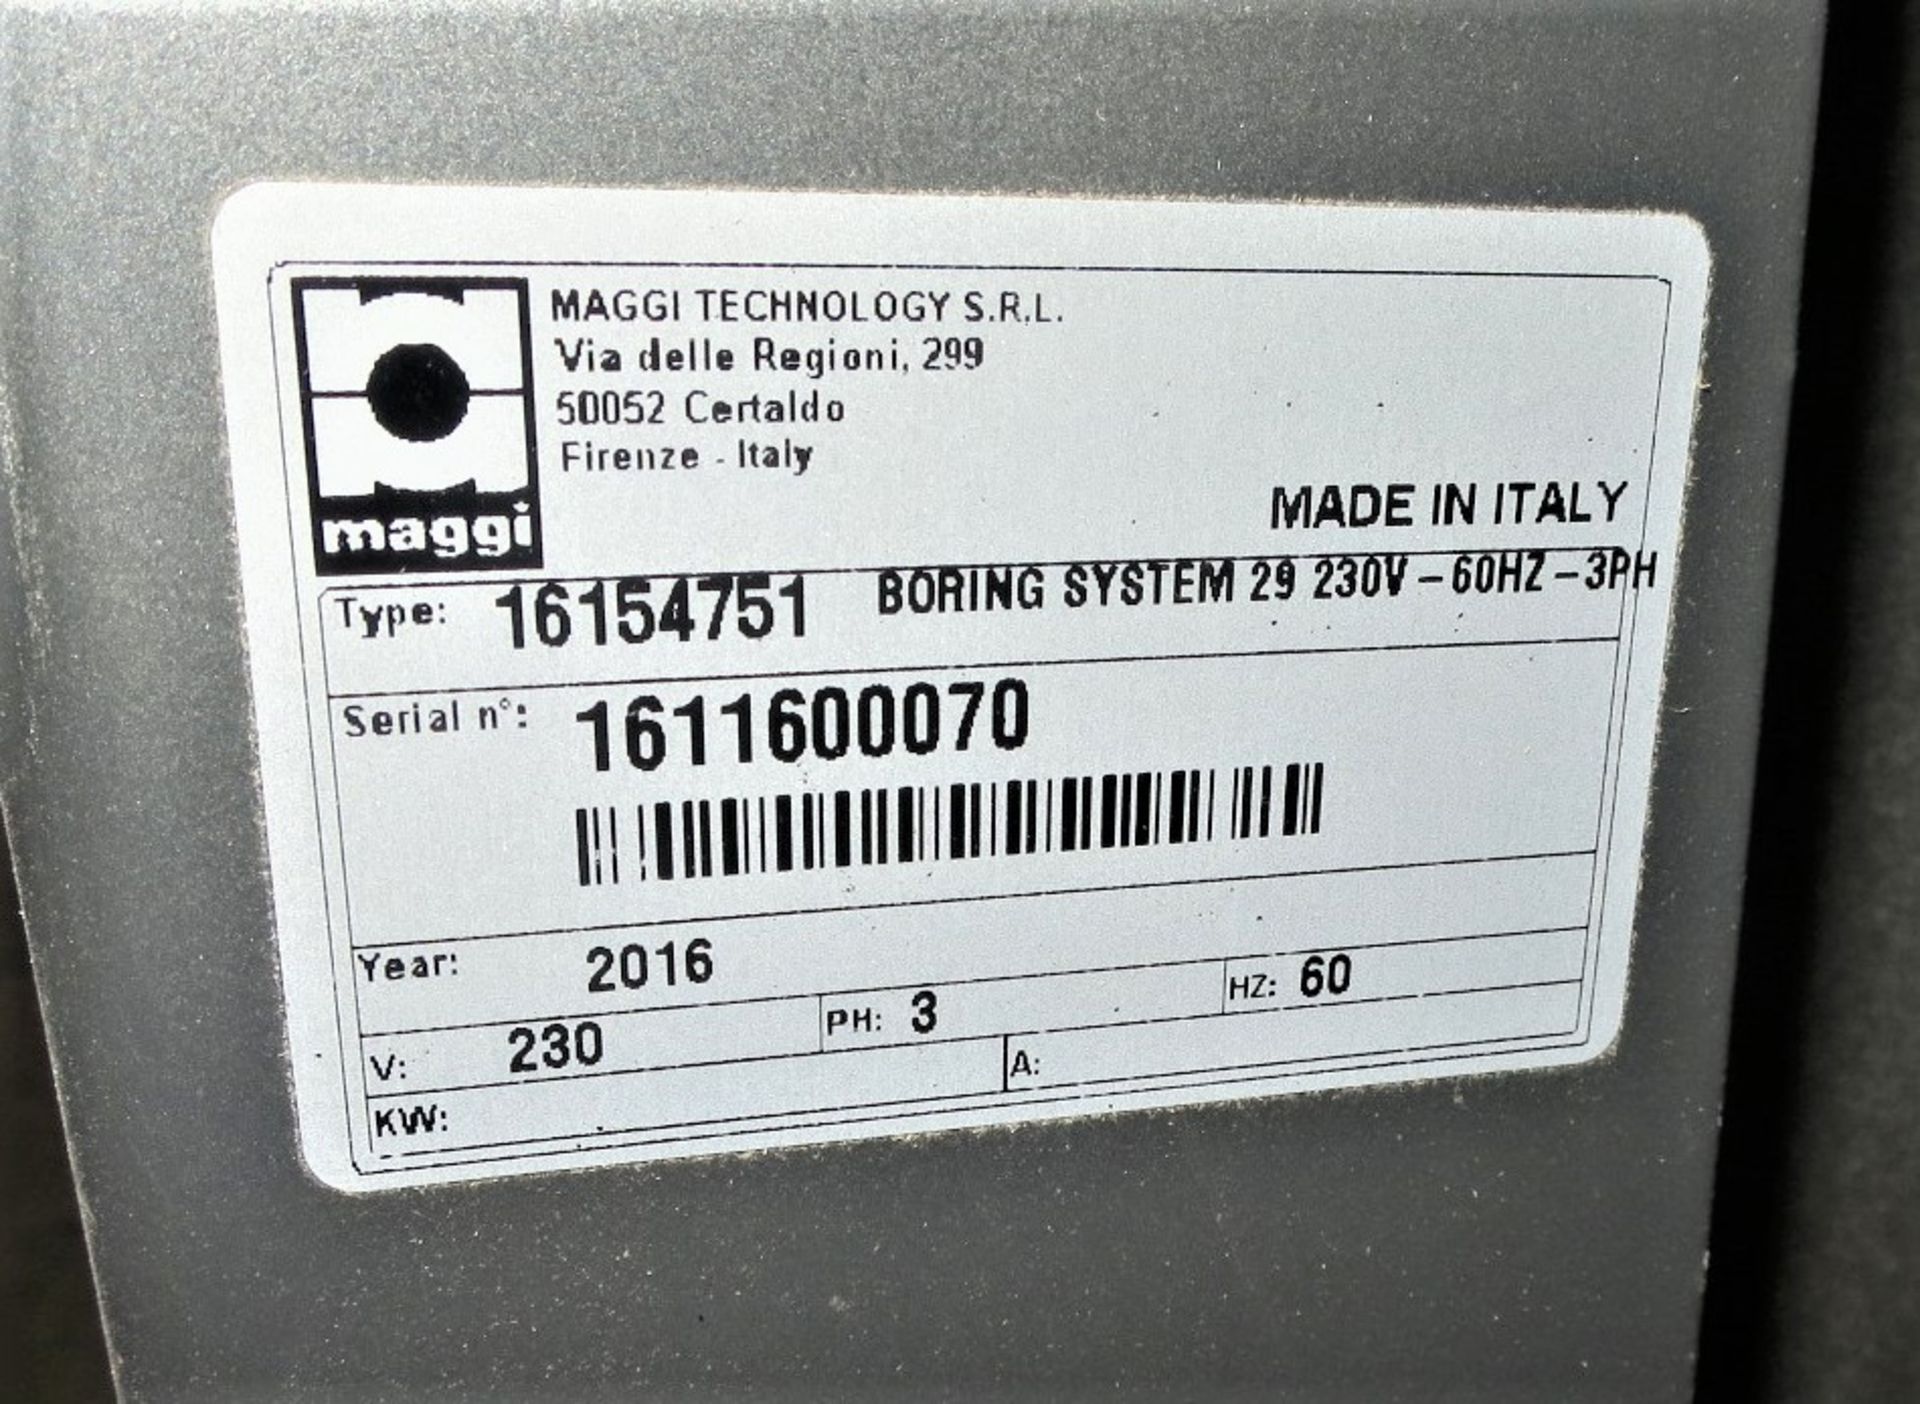 2016 Maggi Boring System 29 Type 16154751, SN 1611600070 - Image 3 of 3